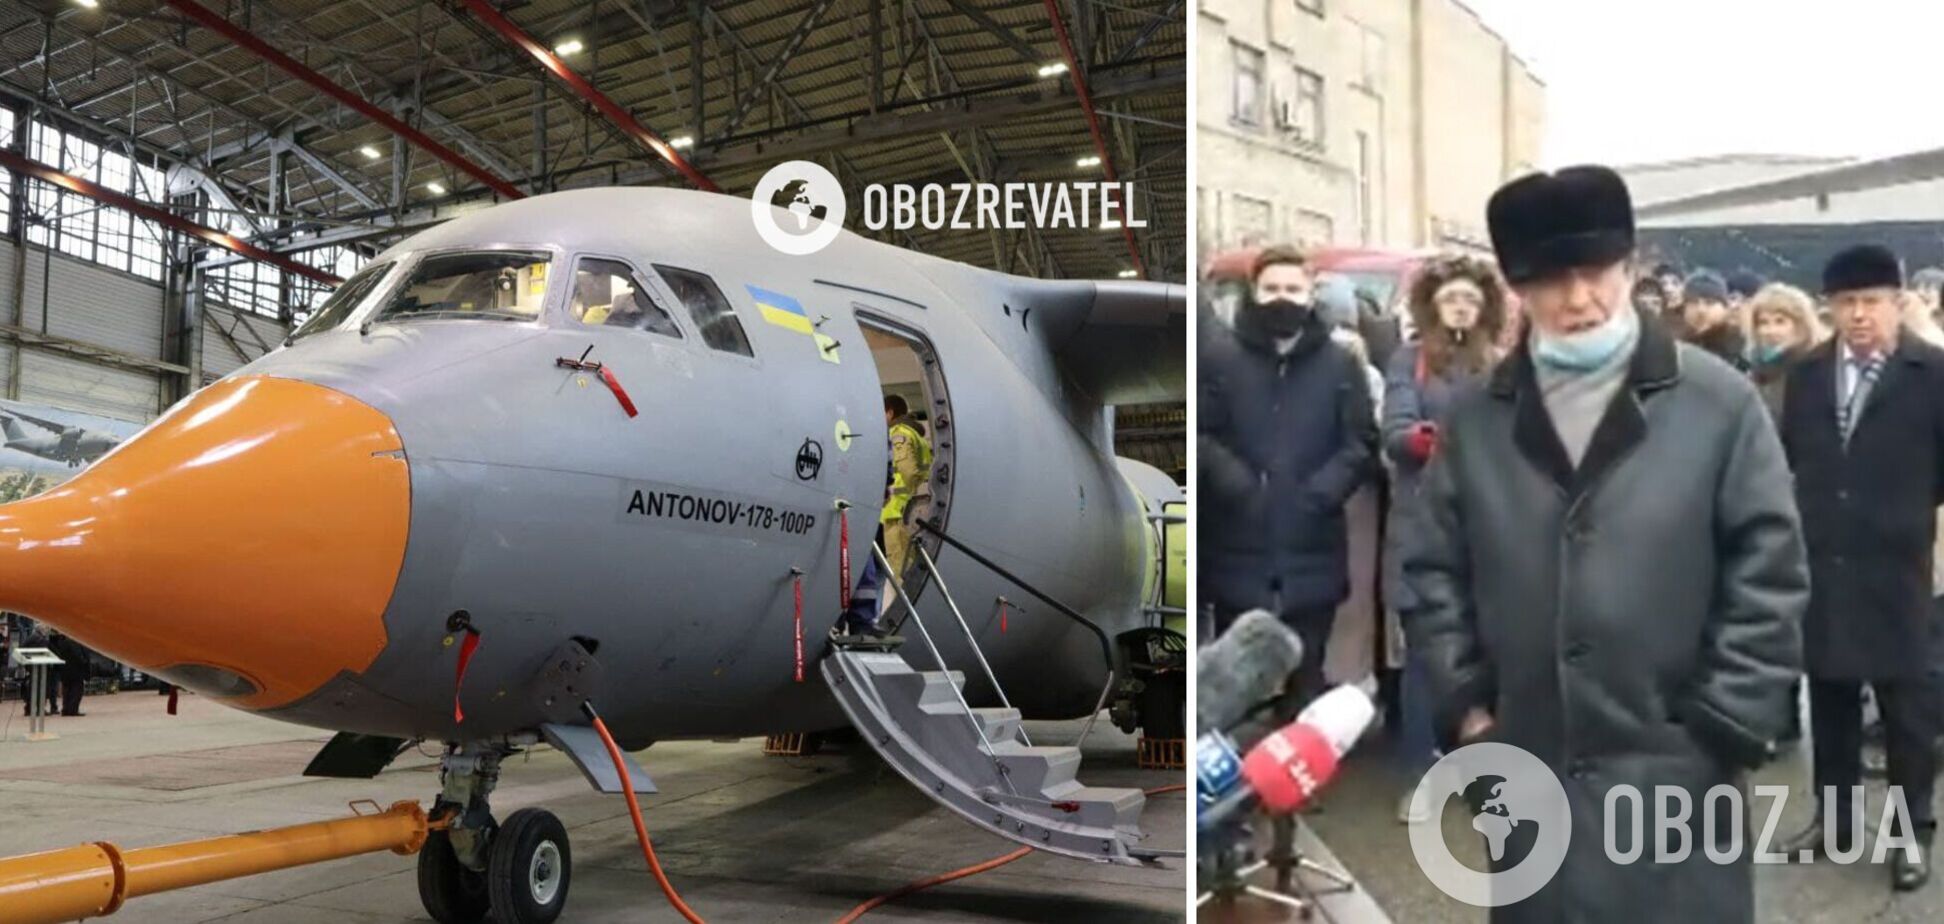 Гендиректор ДП 'Антонов' запевнив, що у представленого літака немає деталей російського виробництва